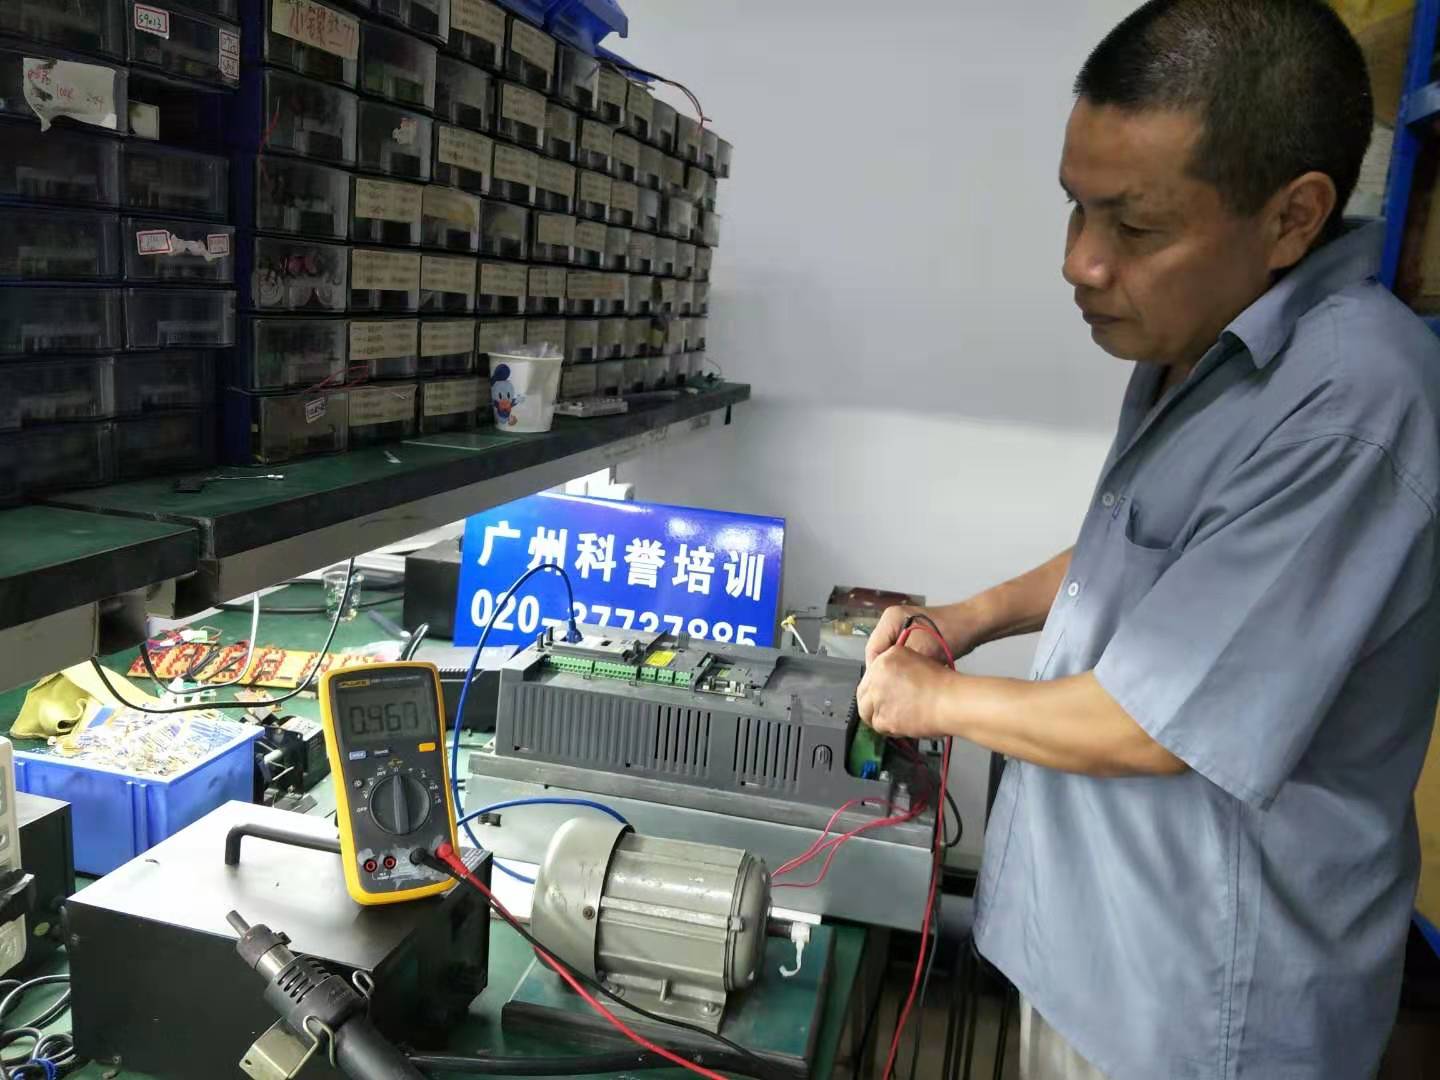 电路板维修方法之电压检测法